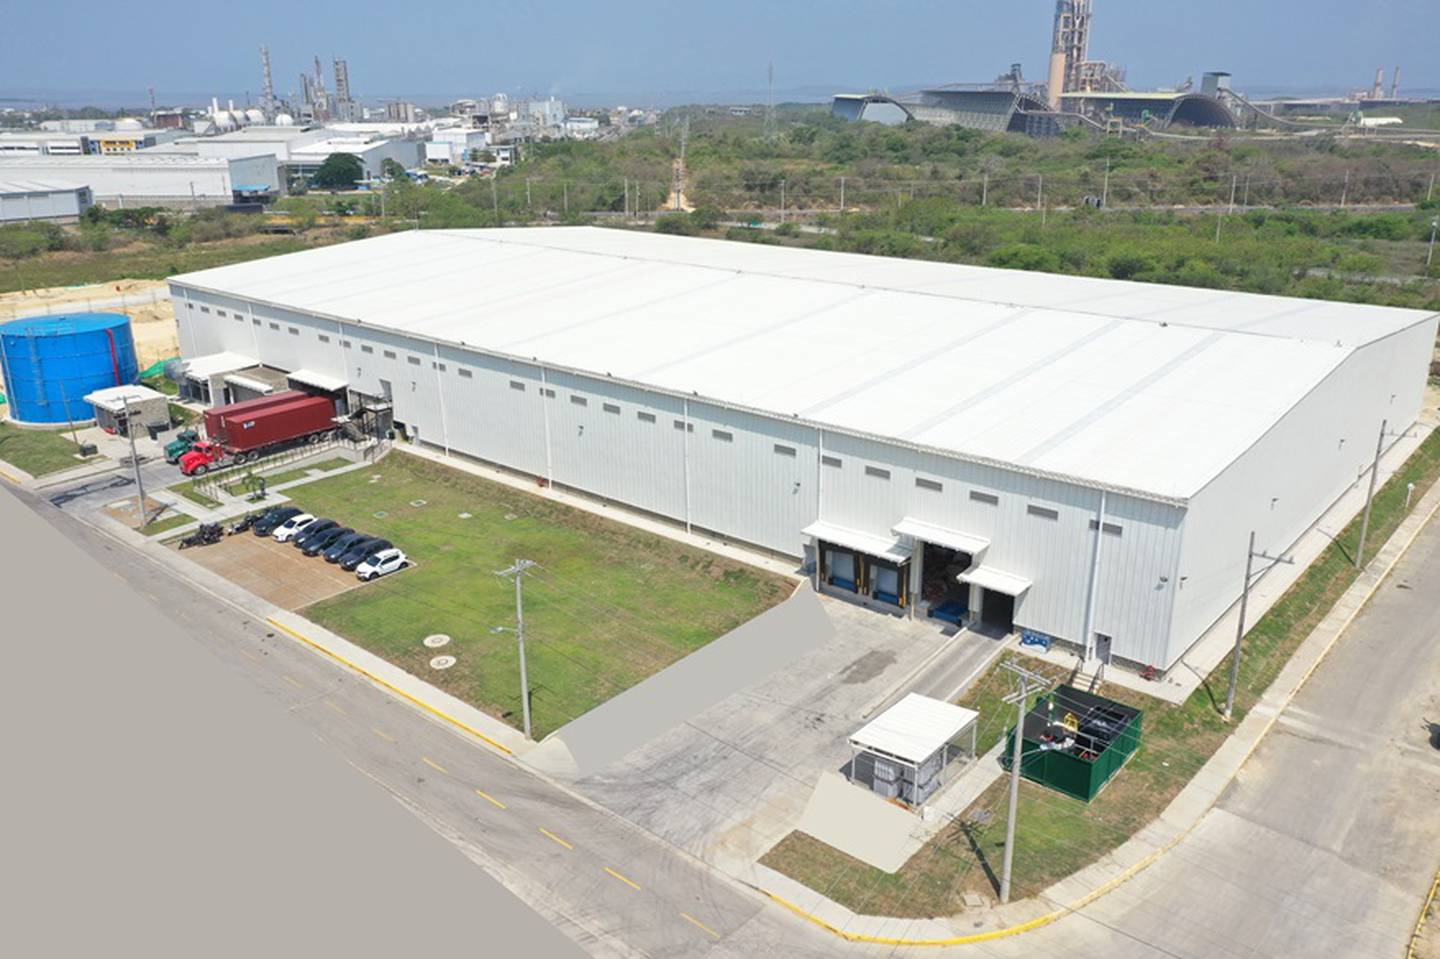 Planta de Mondi Group en Cartagena desde donde se atenderán los mercados ce Centro y Suramérica.